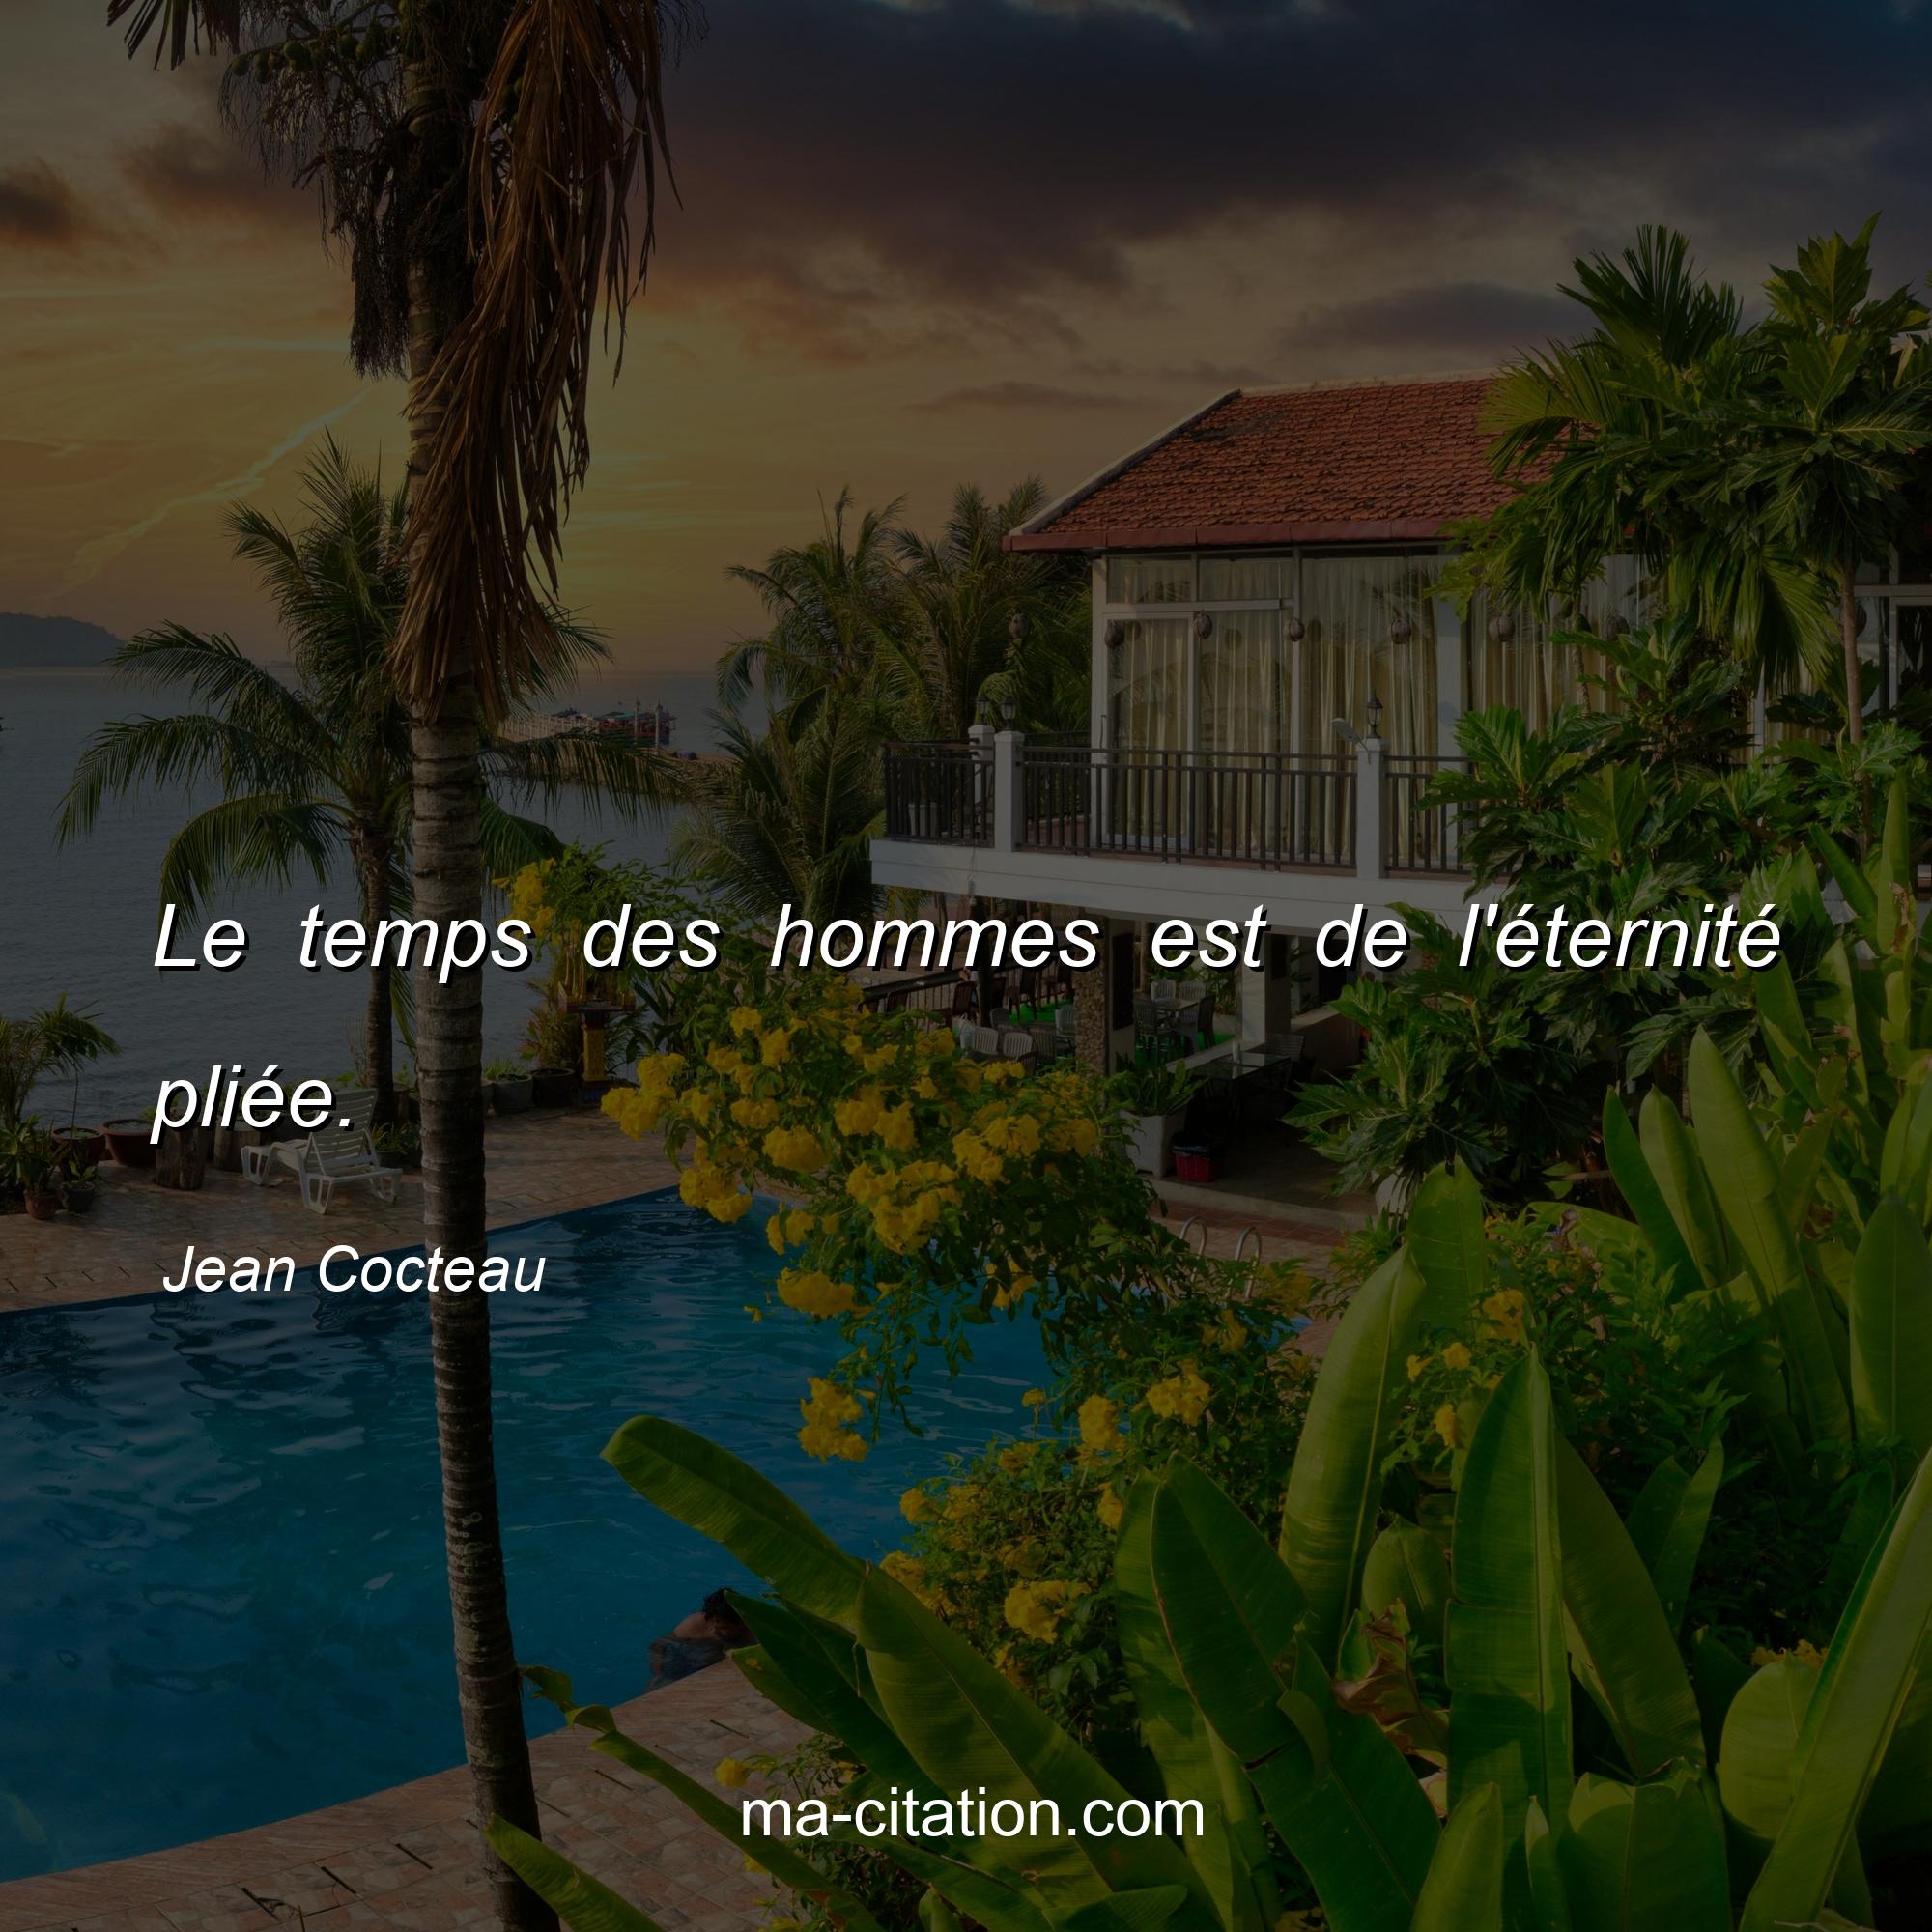 Jean Cocteau : Le temps des hommes est de l'éternité pliée.